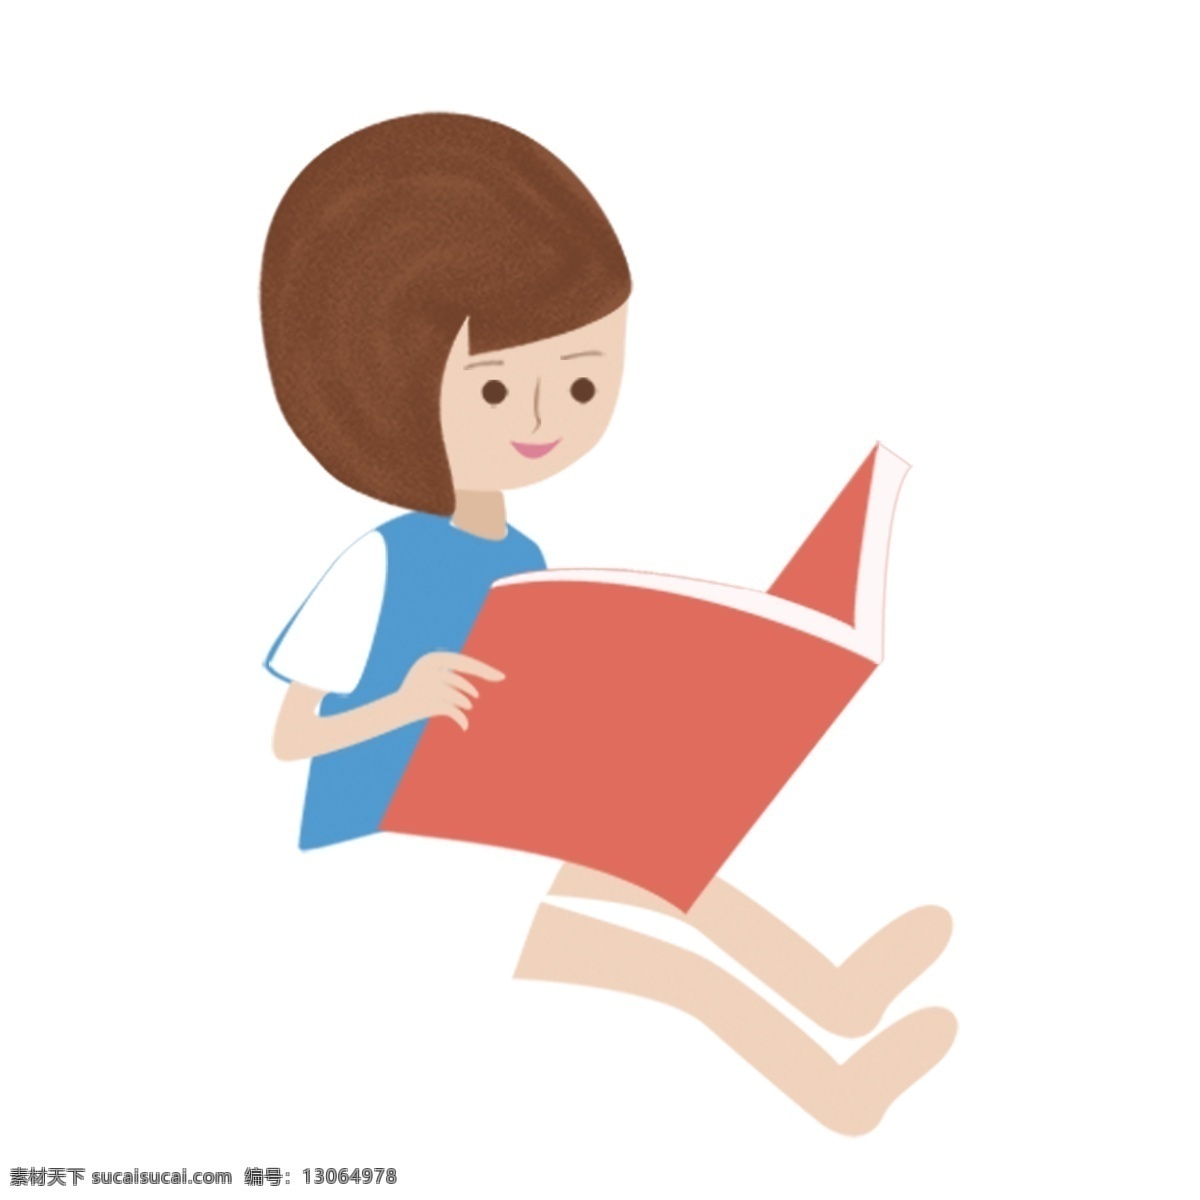 坐 看书 女孩 图案 元素 卡通人物 阅读 看书的女孩 人物元素 设计元素 元素设计 创意元素 手绘元素